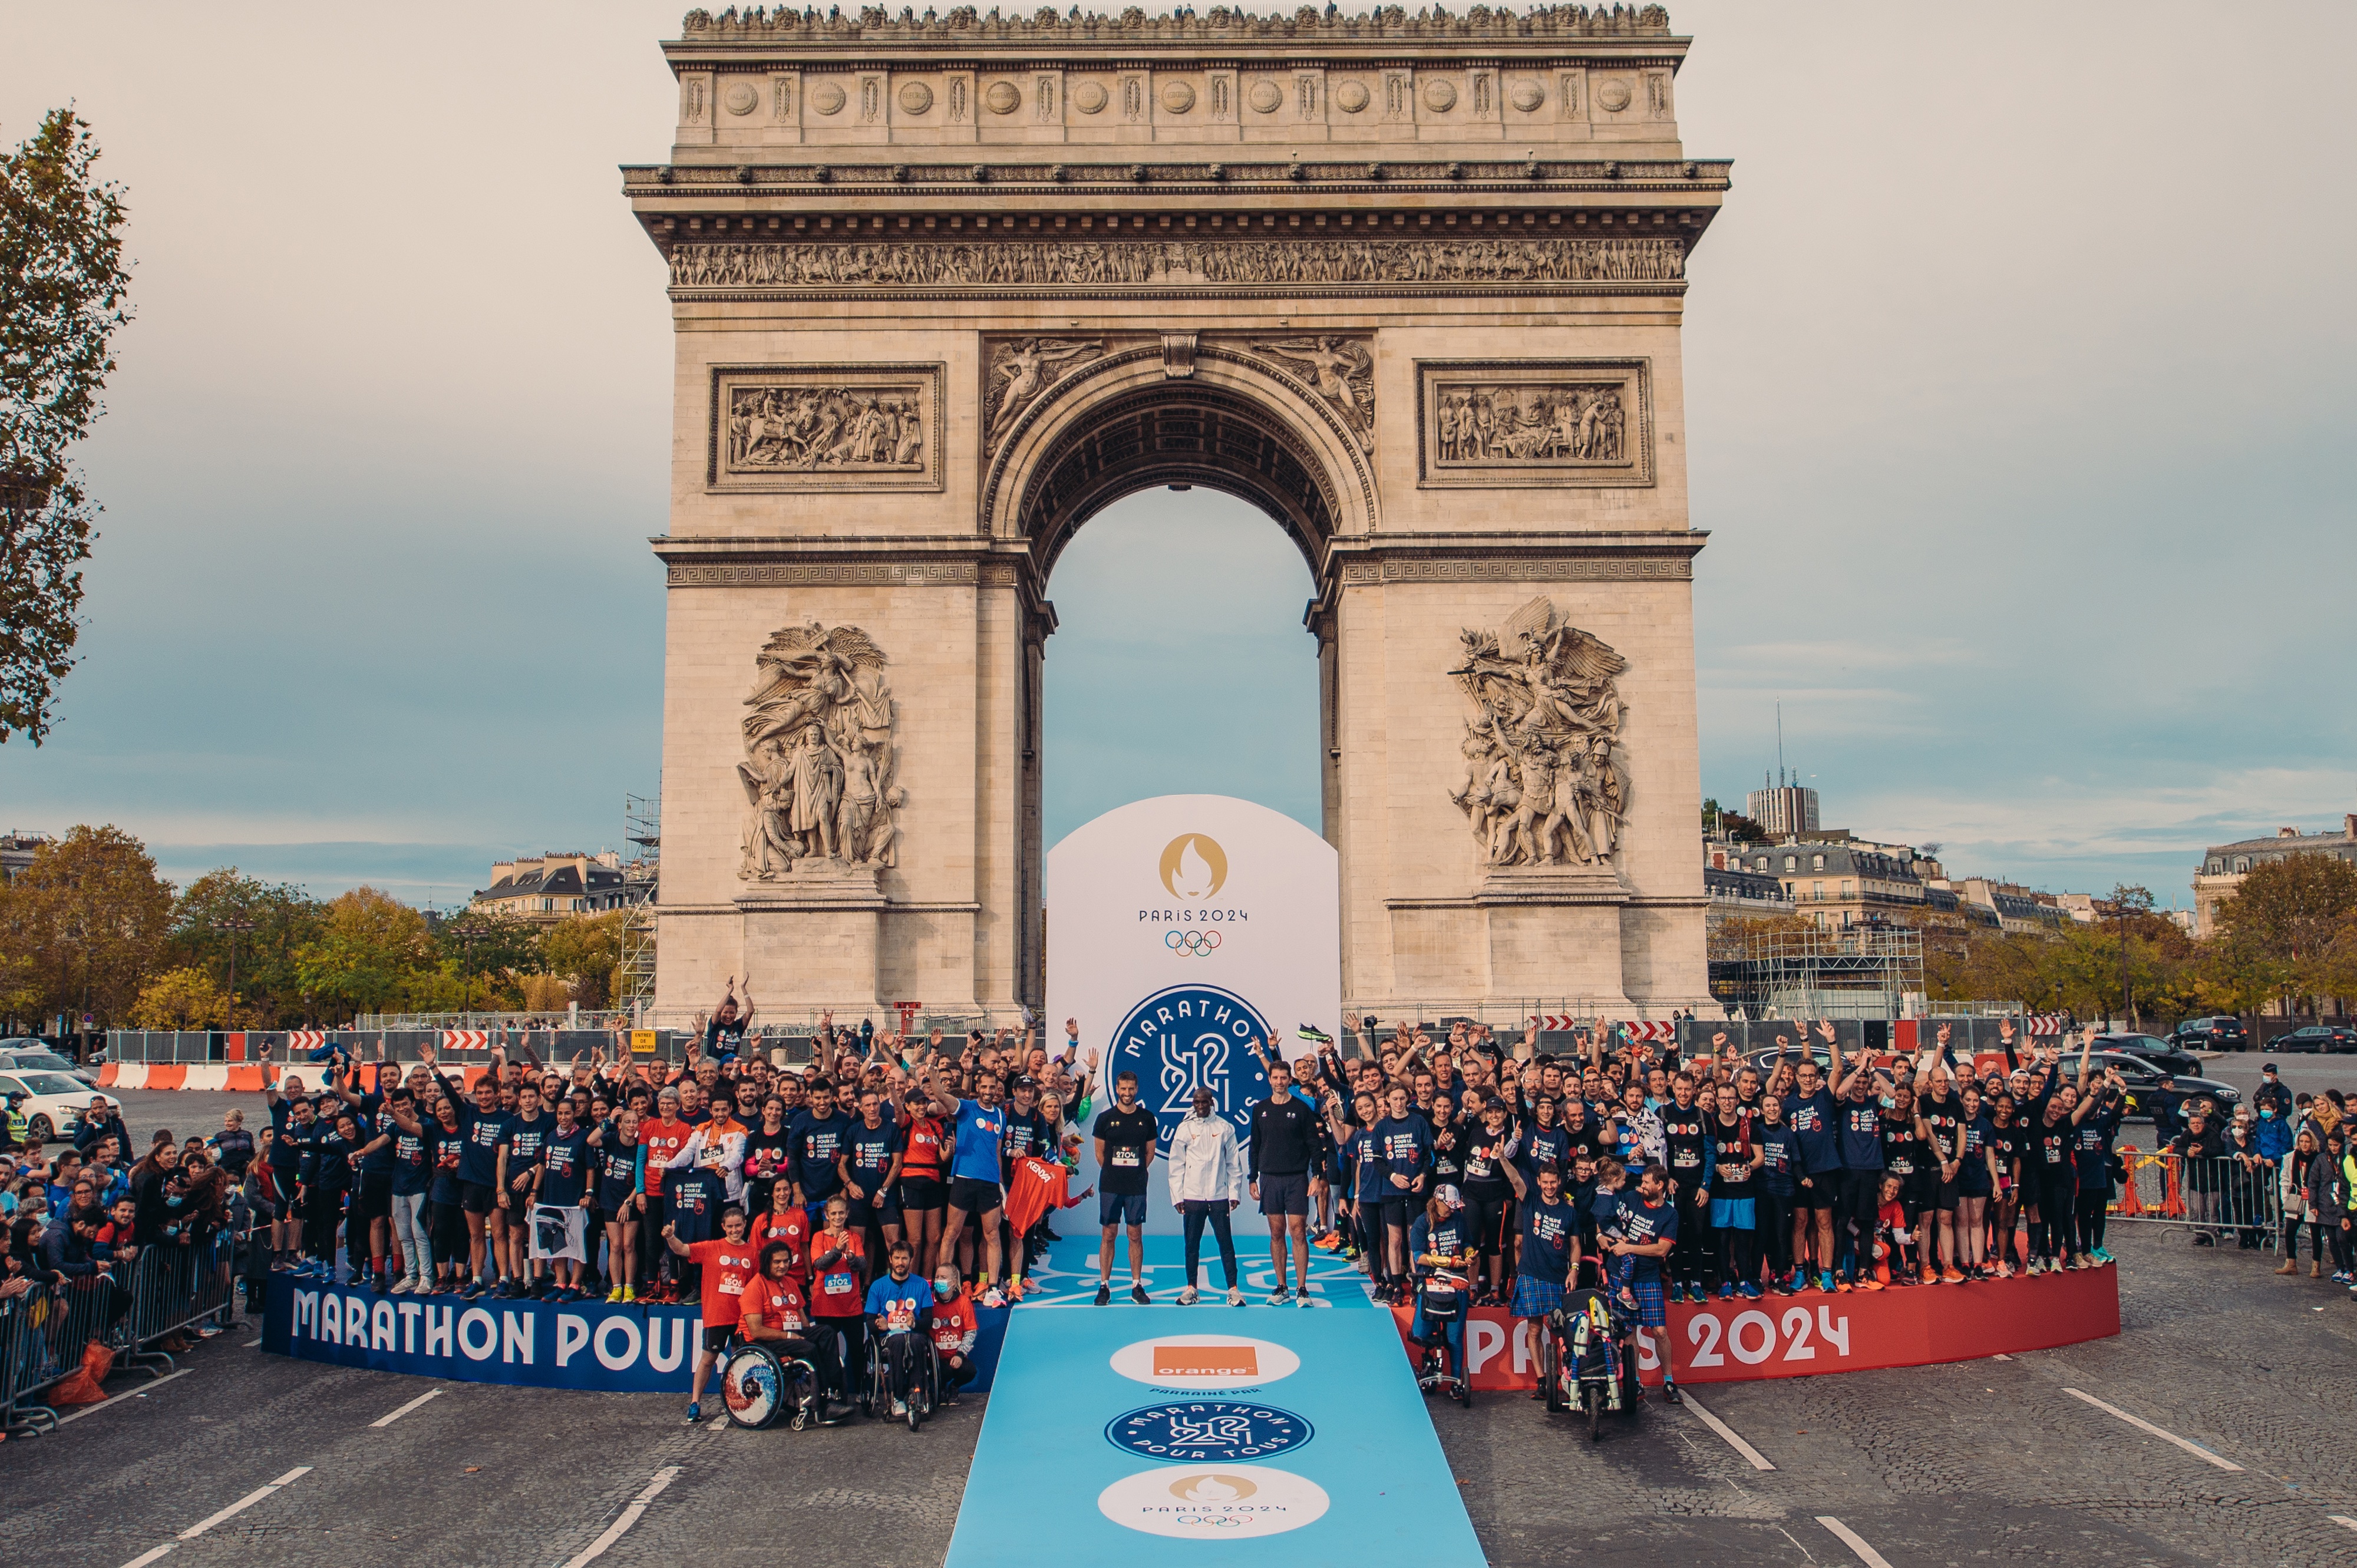 Les vainqueurs du marathon pour tous Paris 2024 devant l'arc de triomphe.